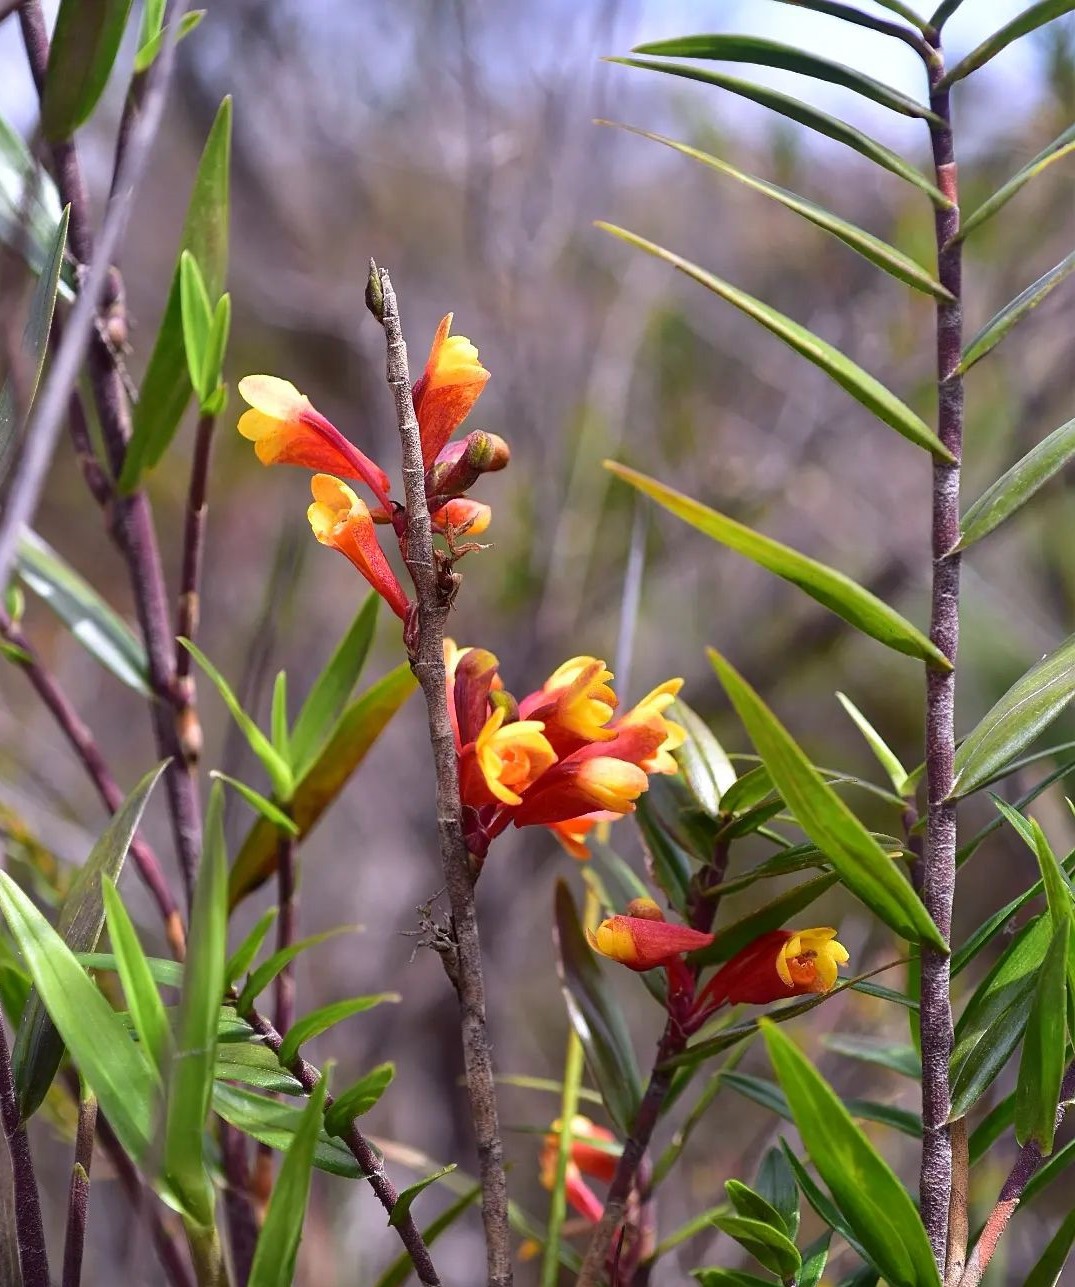 Dendrobium Subclausum

